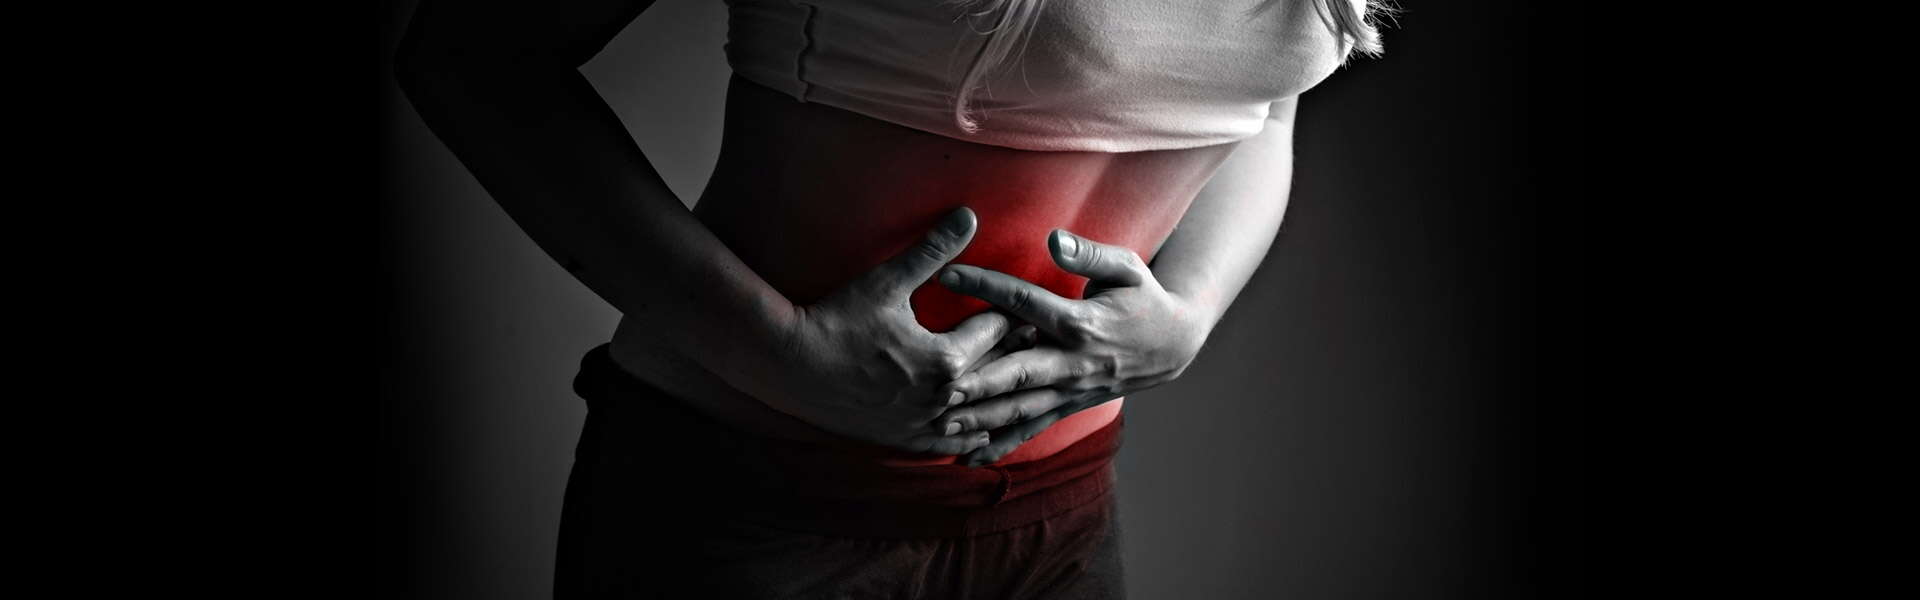 Dolor e hinchazón abdominal: causas y remedios